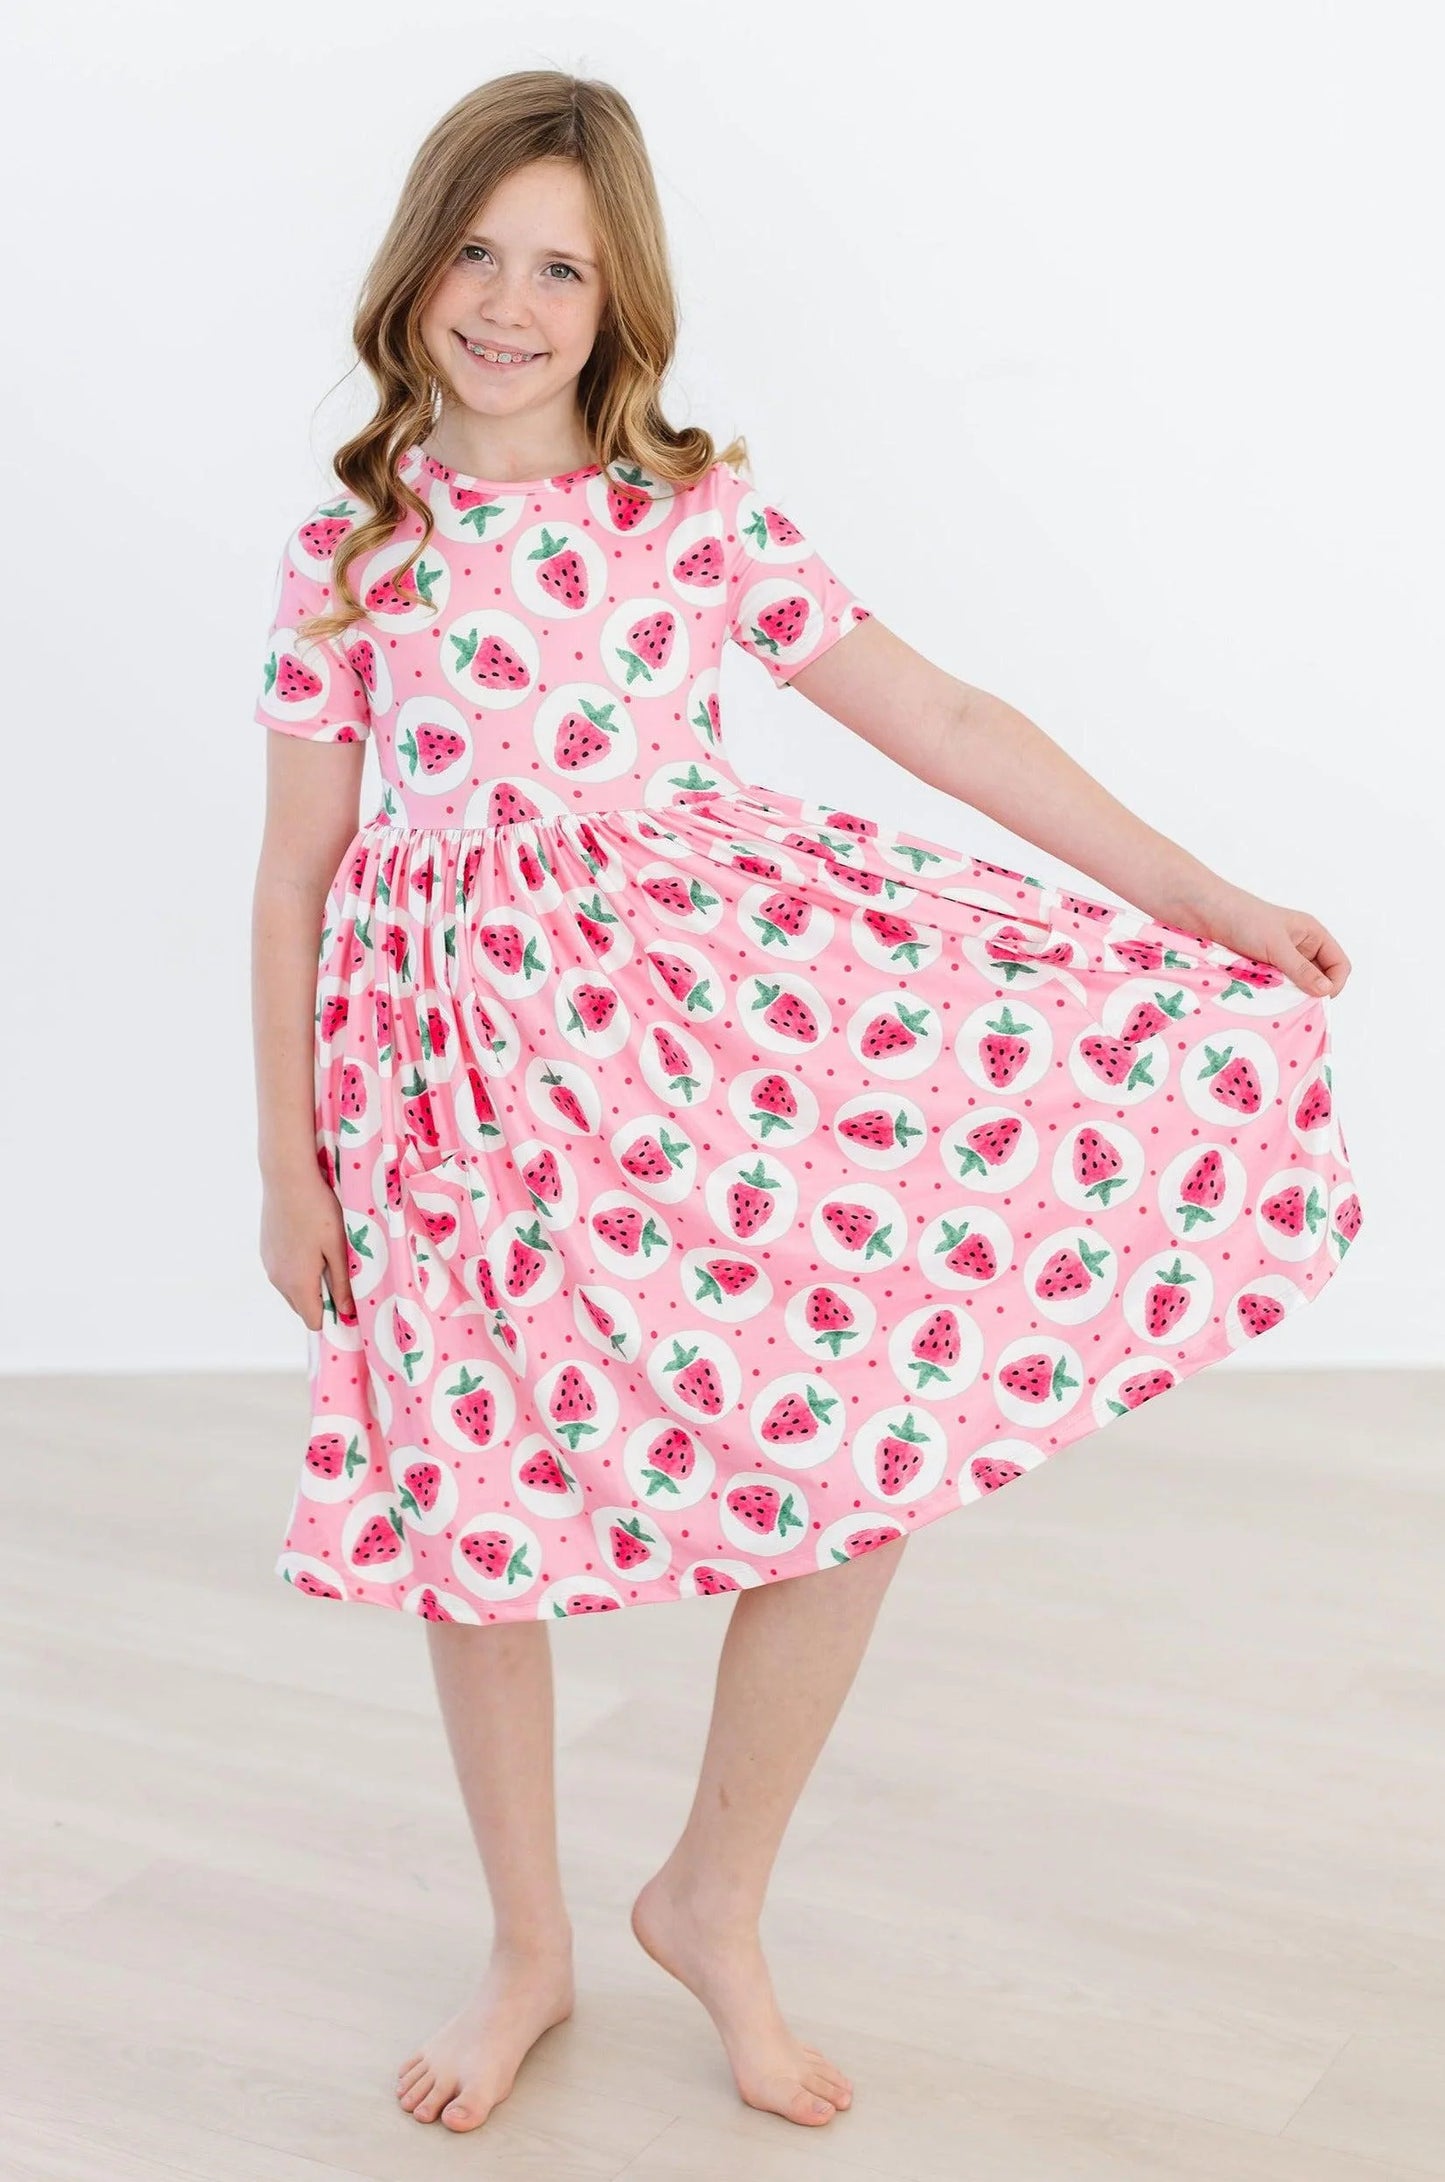 Pocket Twirl Dress - Strawberry Fields